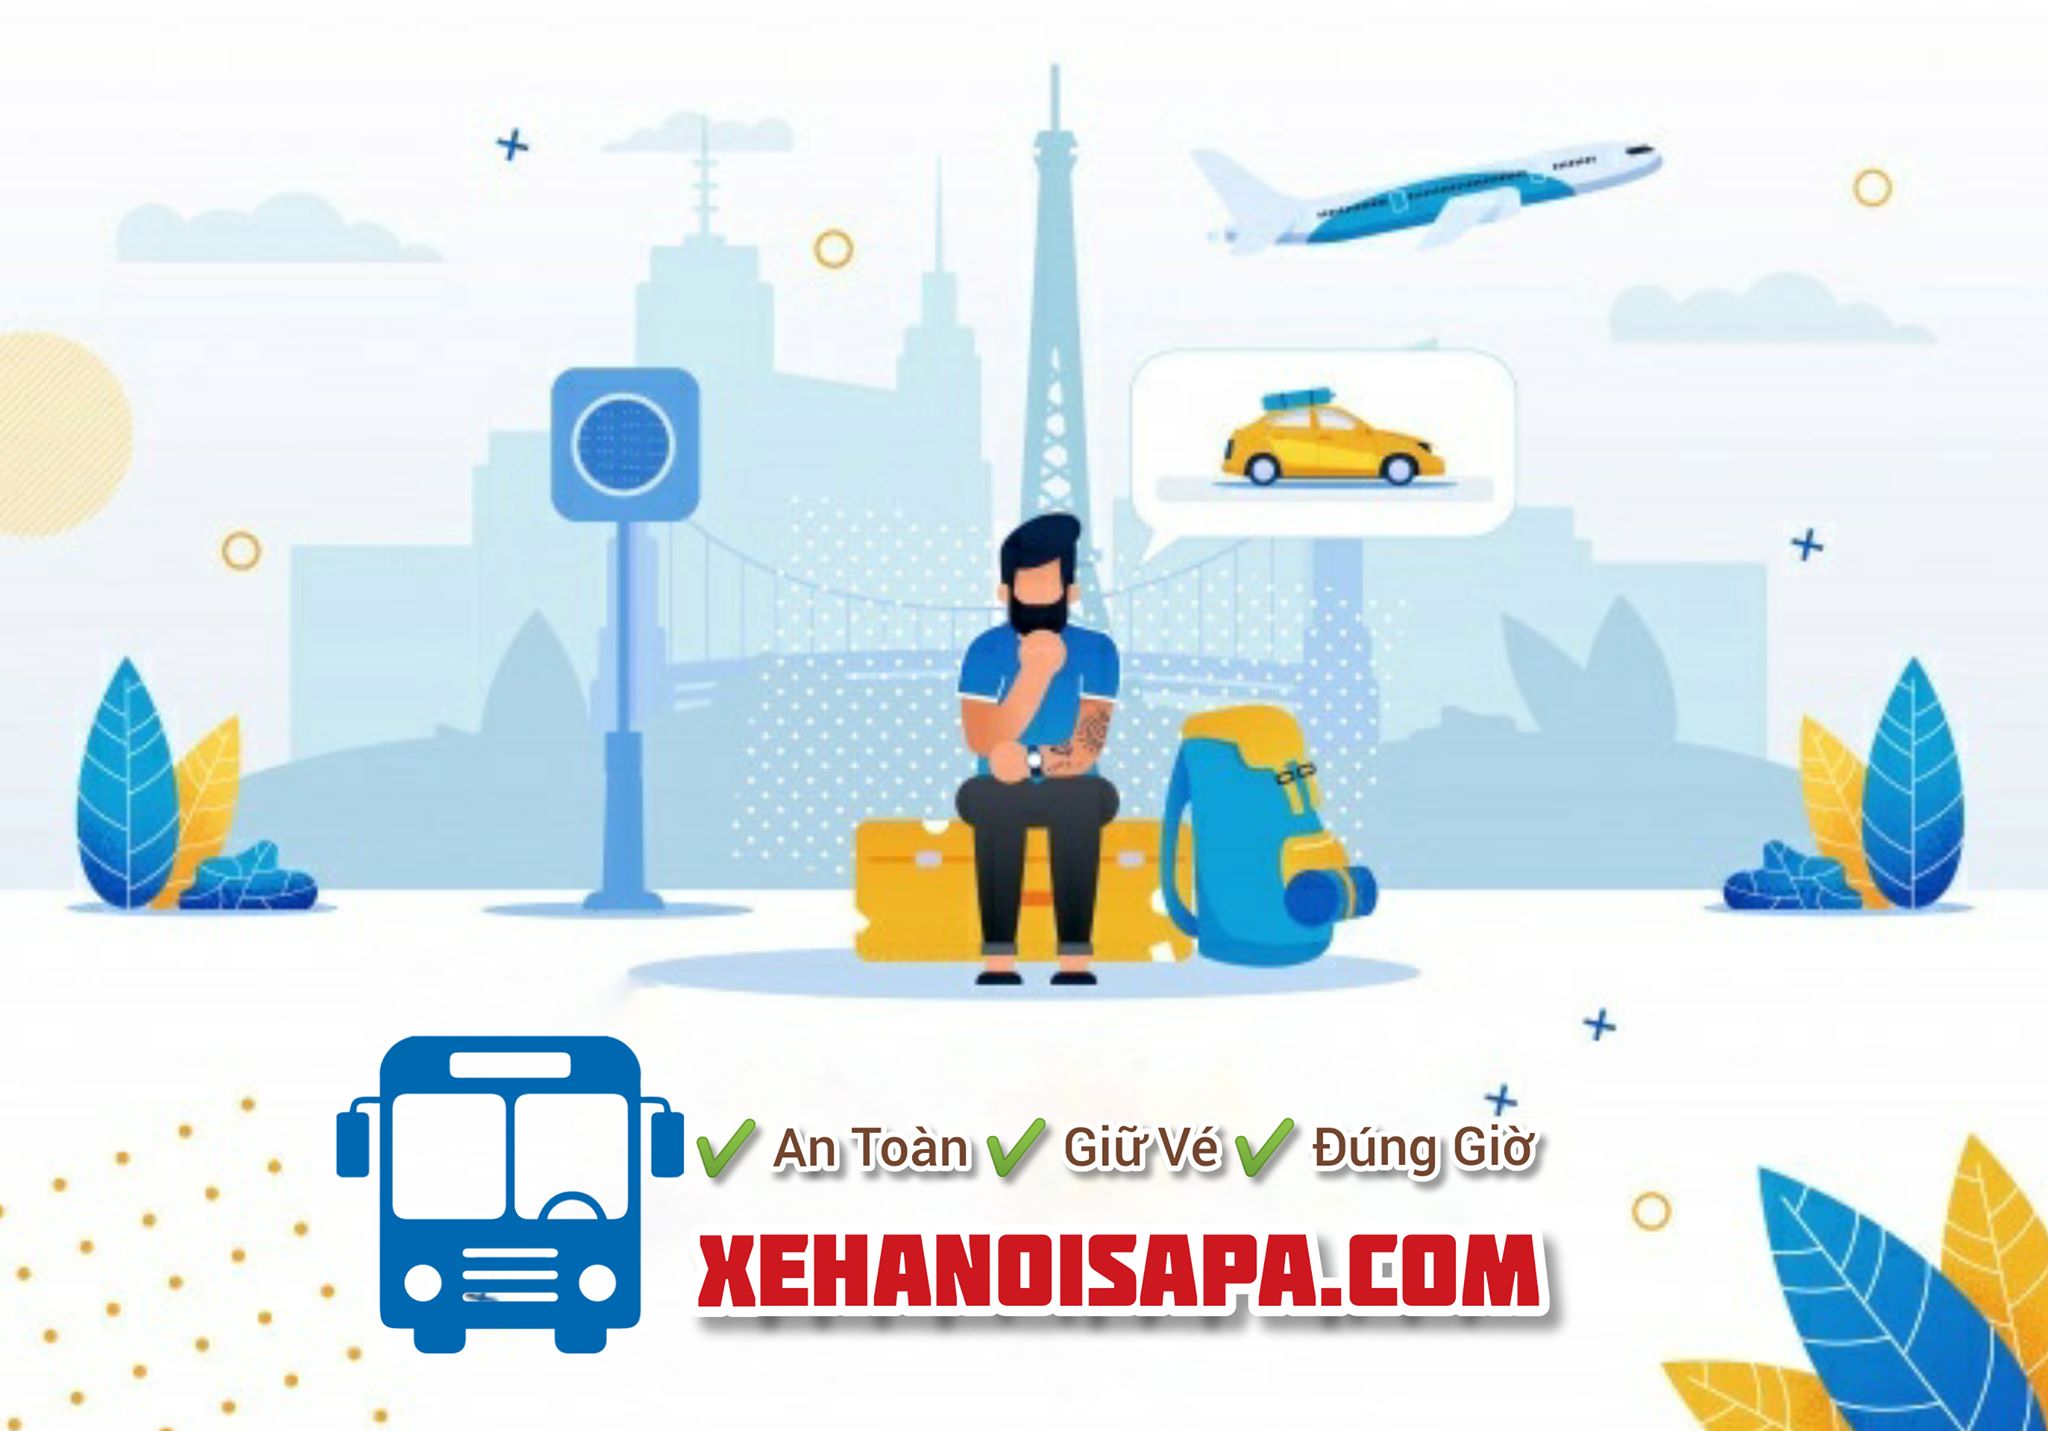 Booking nhanh chóng, an toàn vé xe interbus line tại Xehanoisapa.com